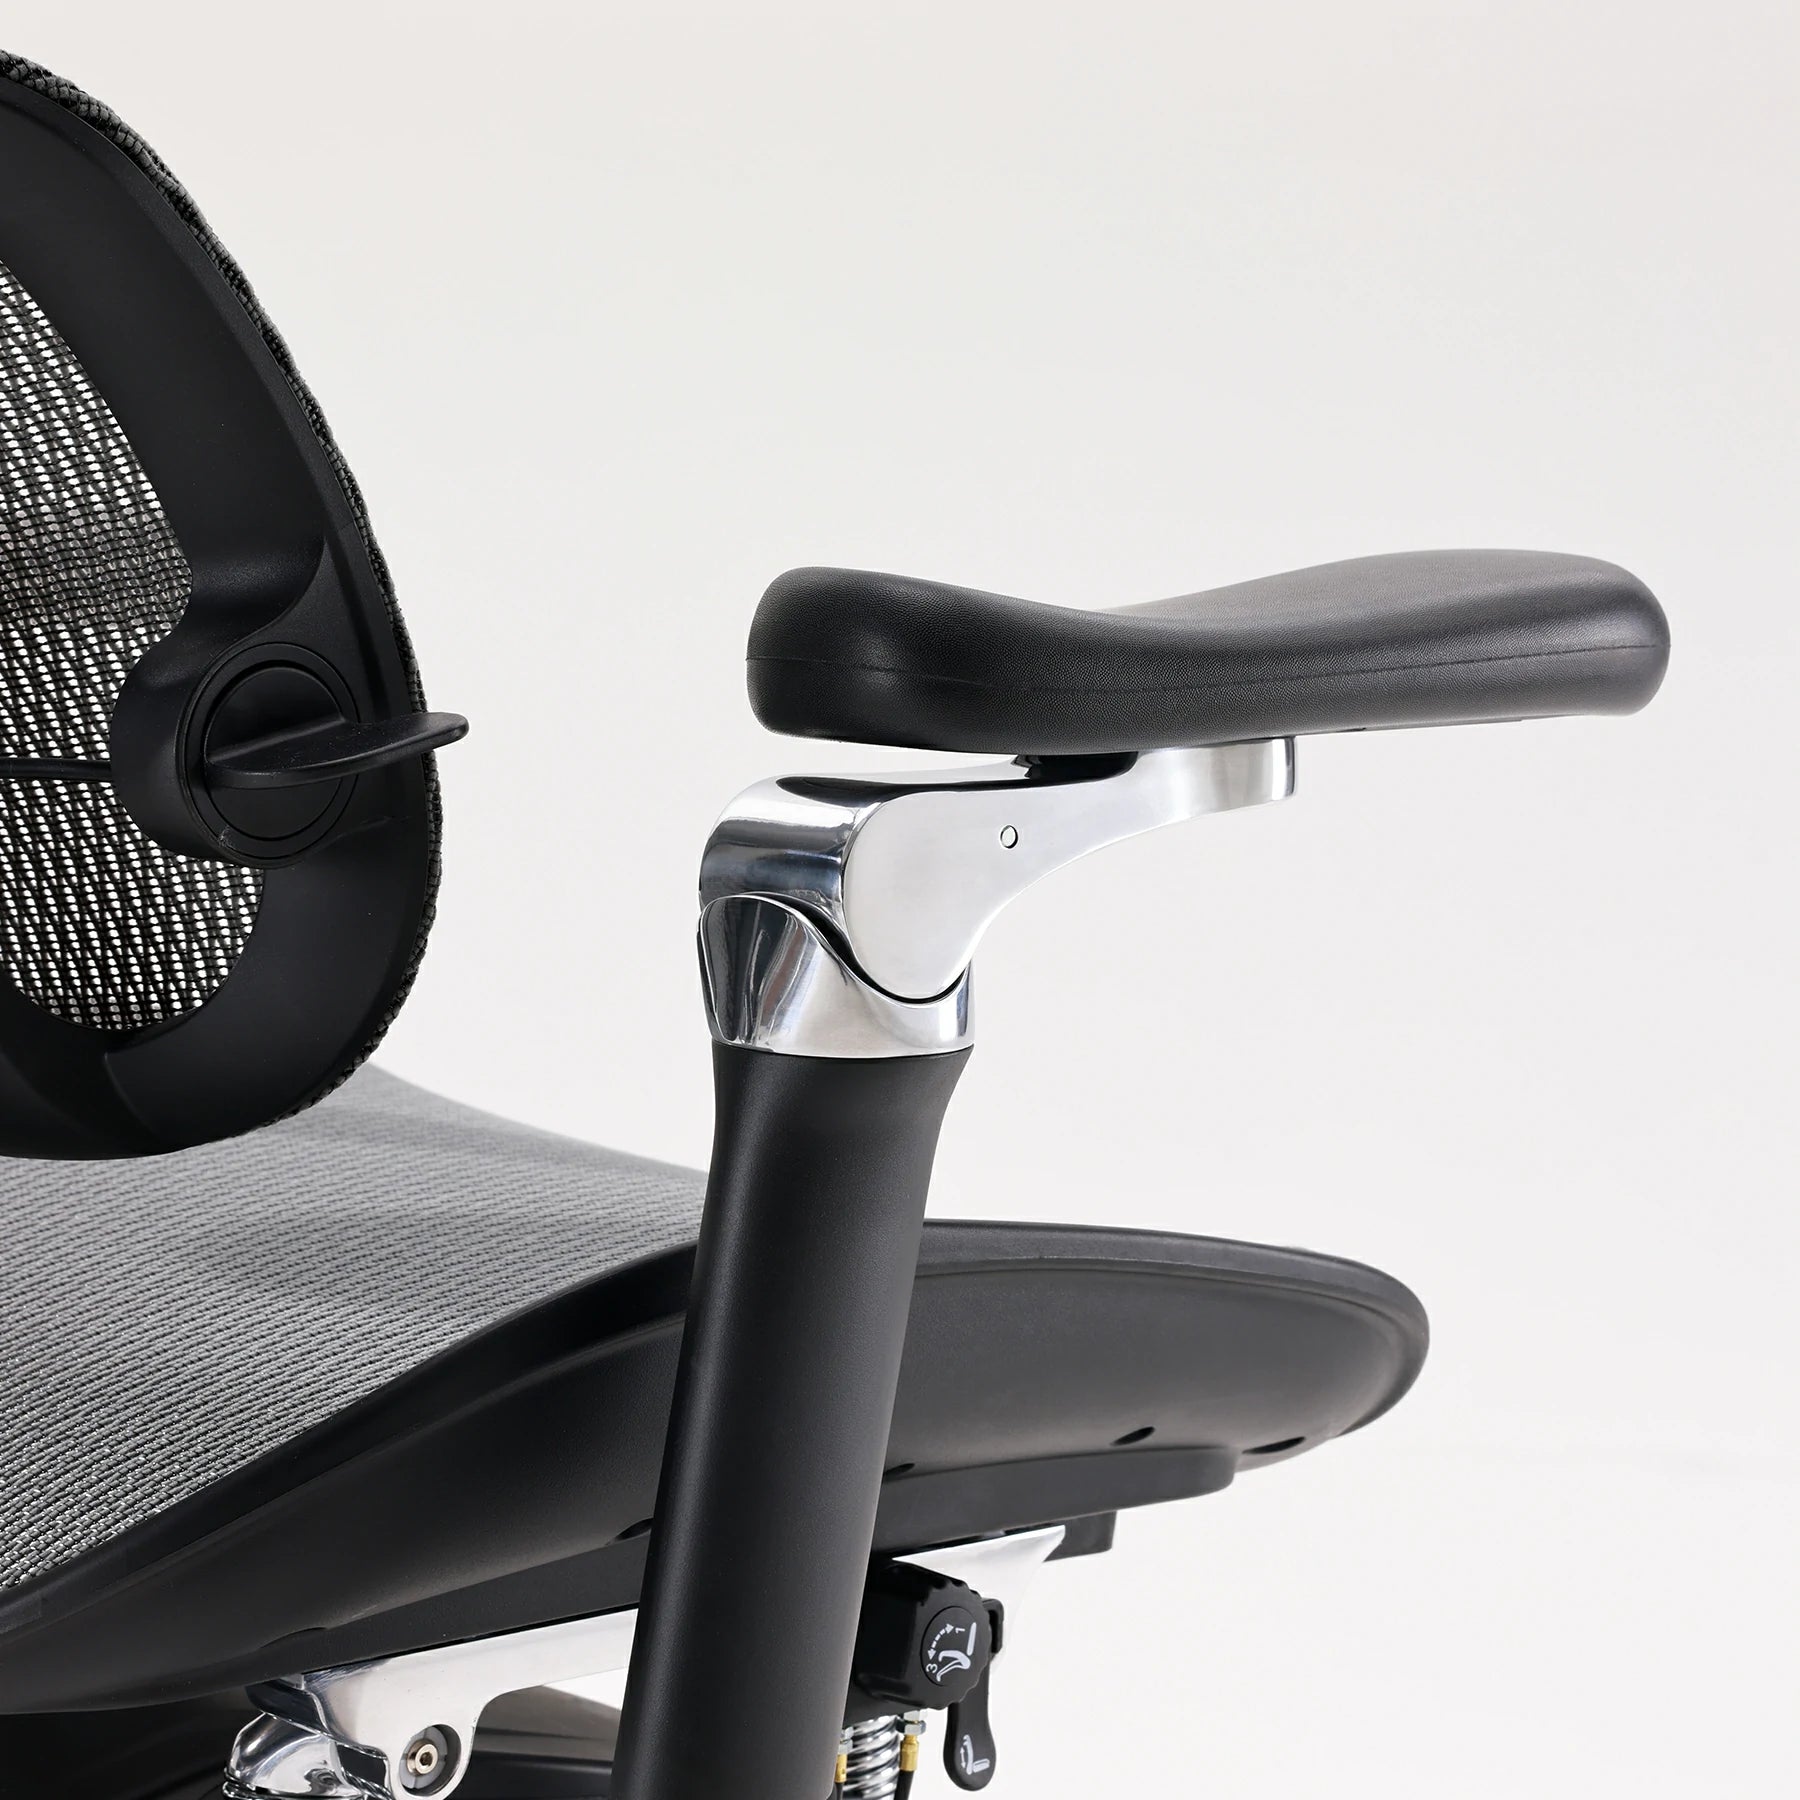 (NEW) Sihoo Doro S300 "Gravity-Defying" Ergonomic Chair